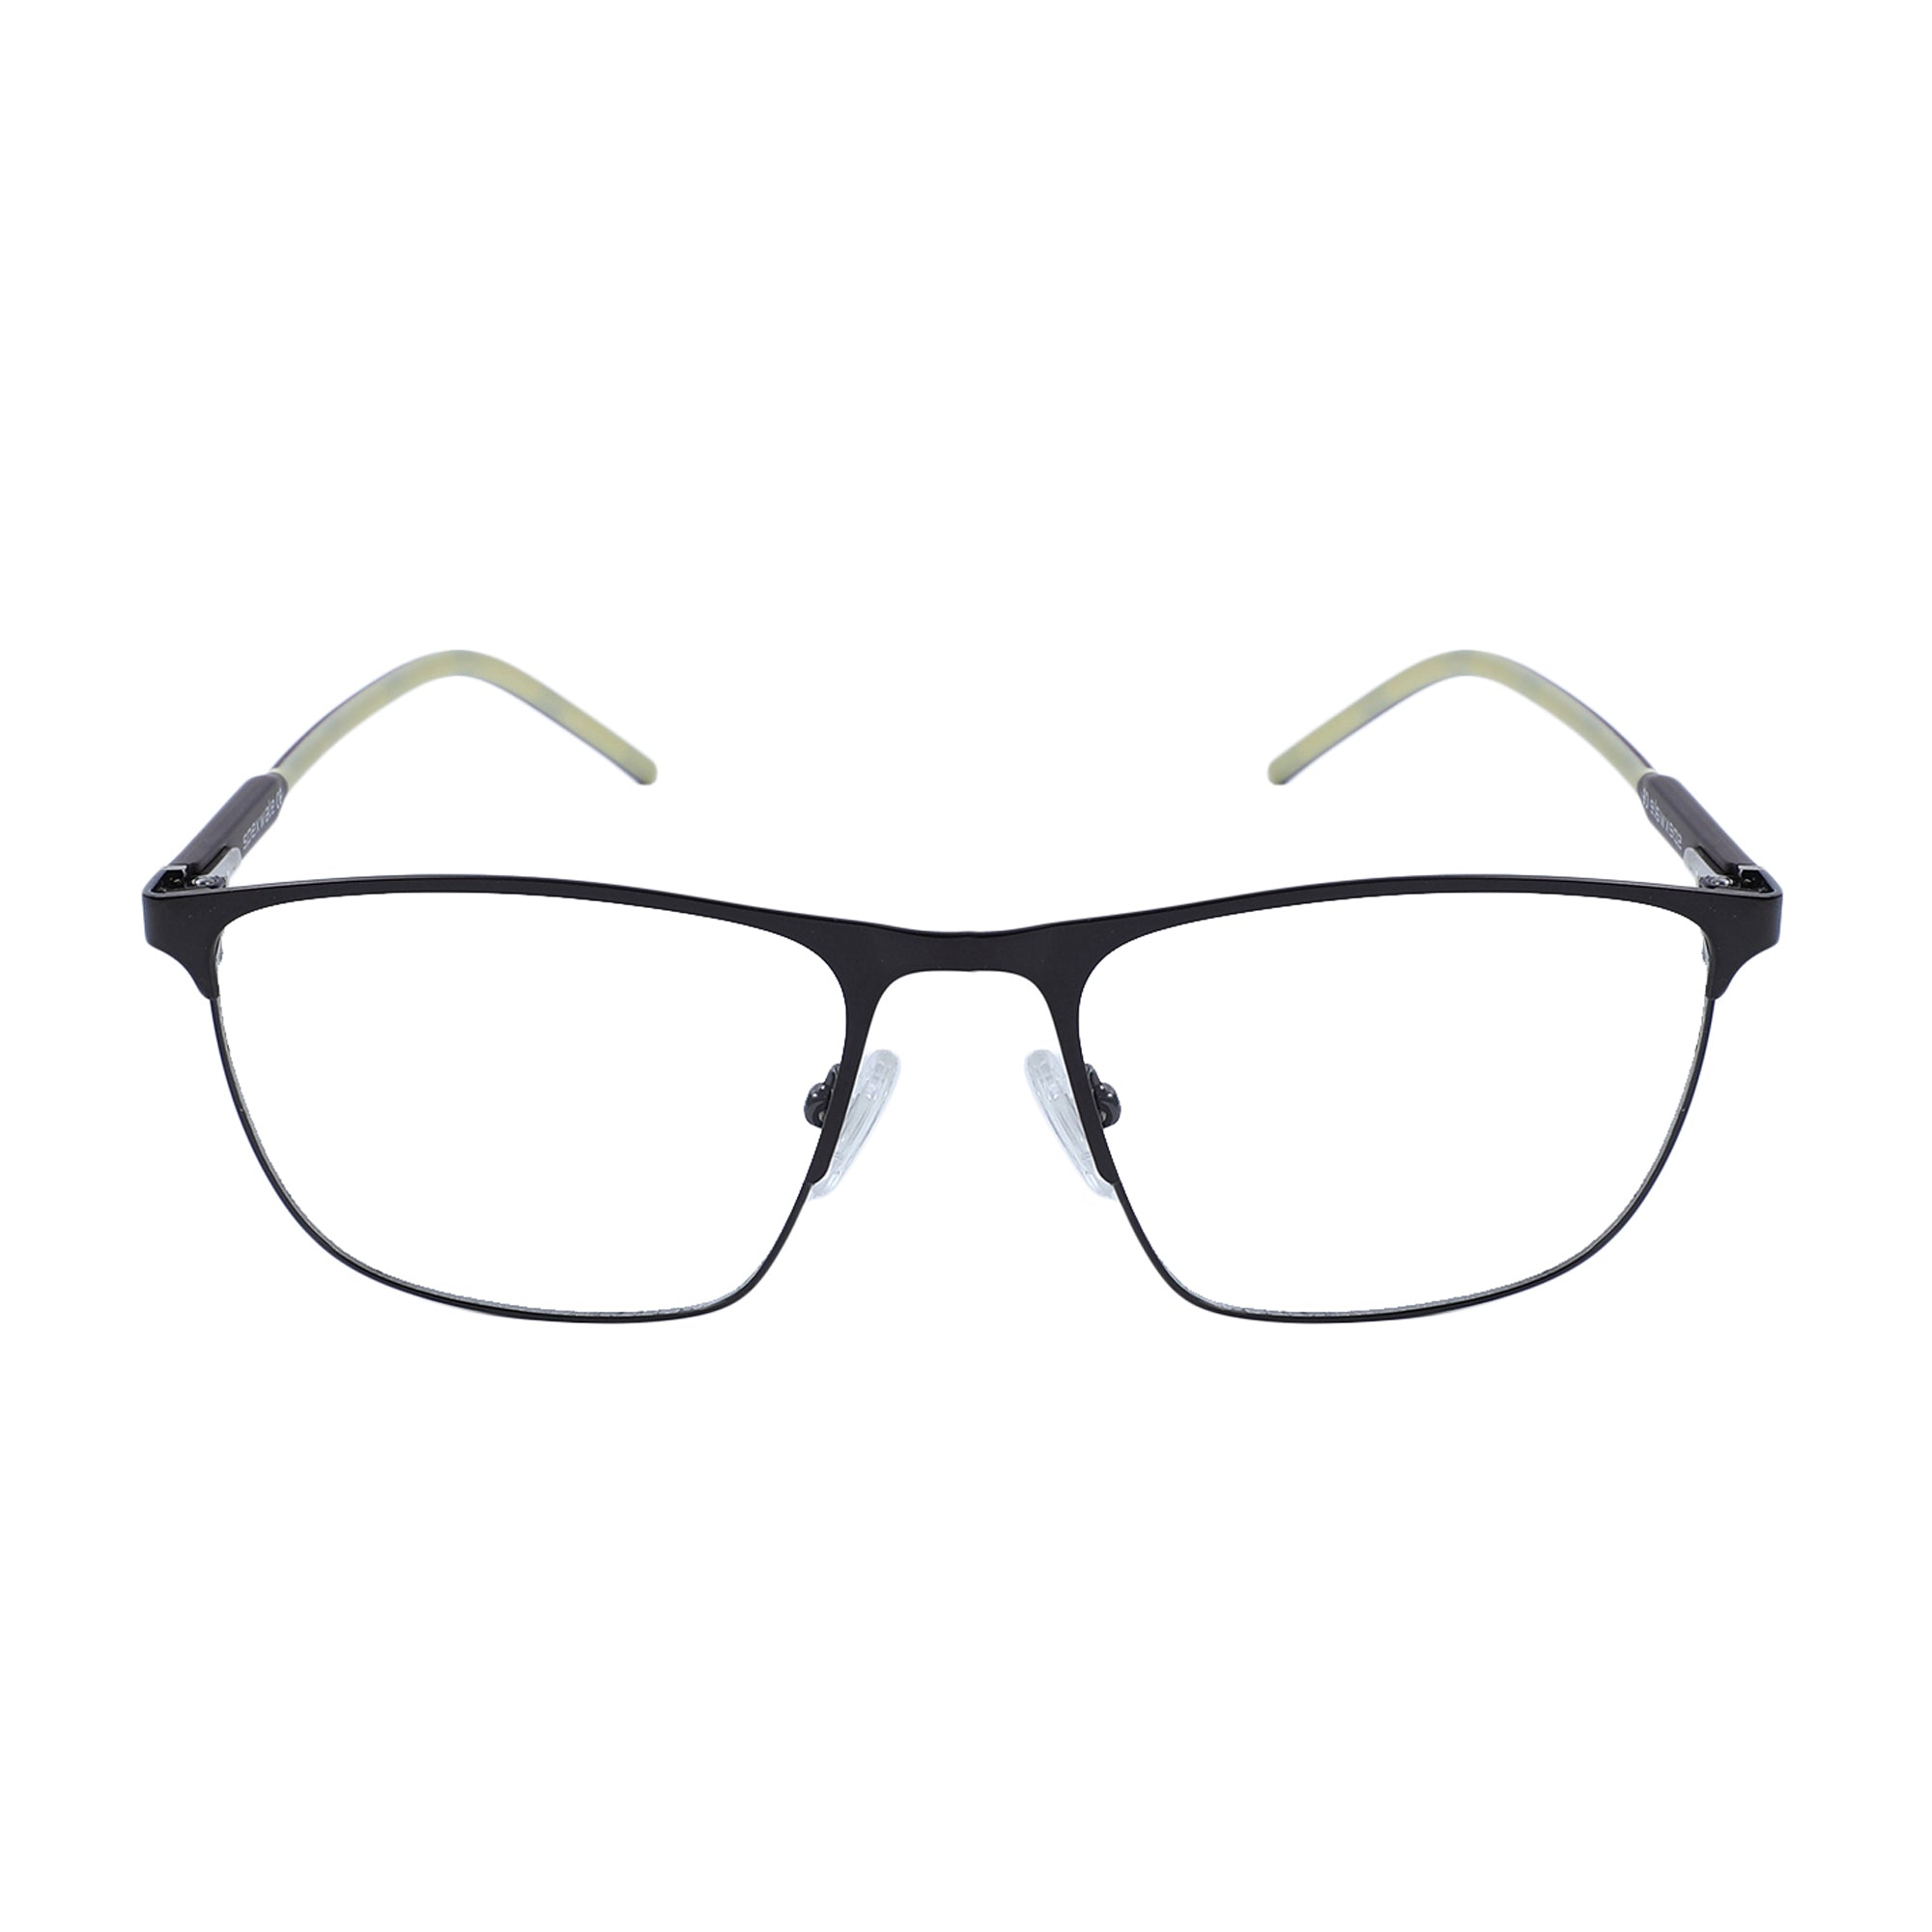 Buy Spexwale Square Eyeglasses for Men & Women (220812) Online in India |  Eyewear for Men-Women